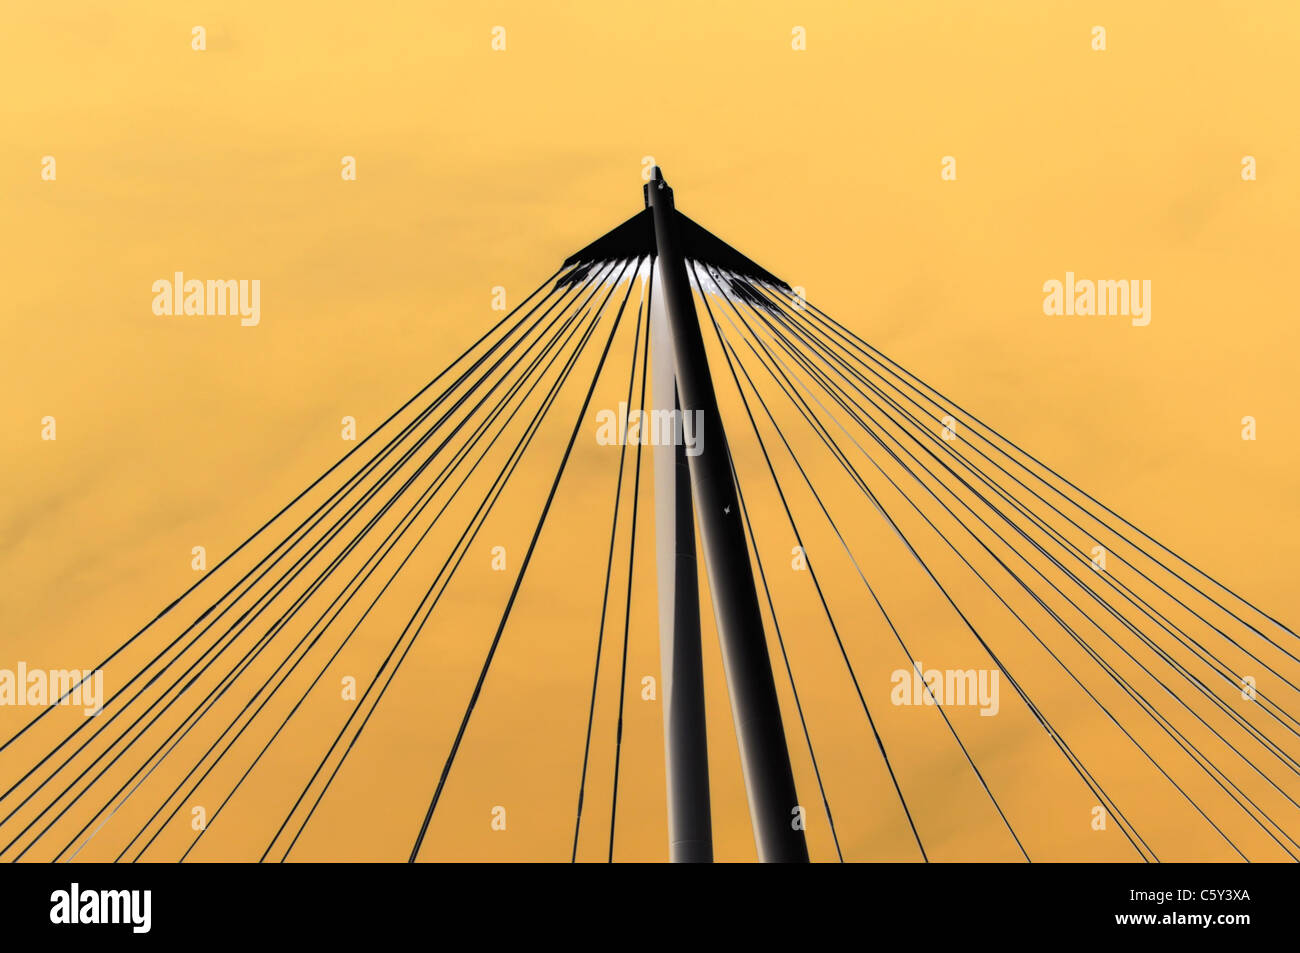 Abstract architettura cluster di sospensione ponte i cavi a filo manipolato colore di sfondo rivolto verso l'alto in una forma triangolare Inghilterra REGNO UNITO Foto Stock